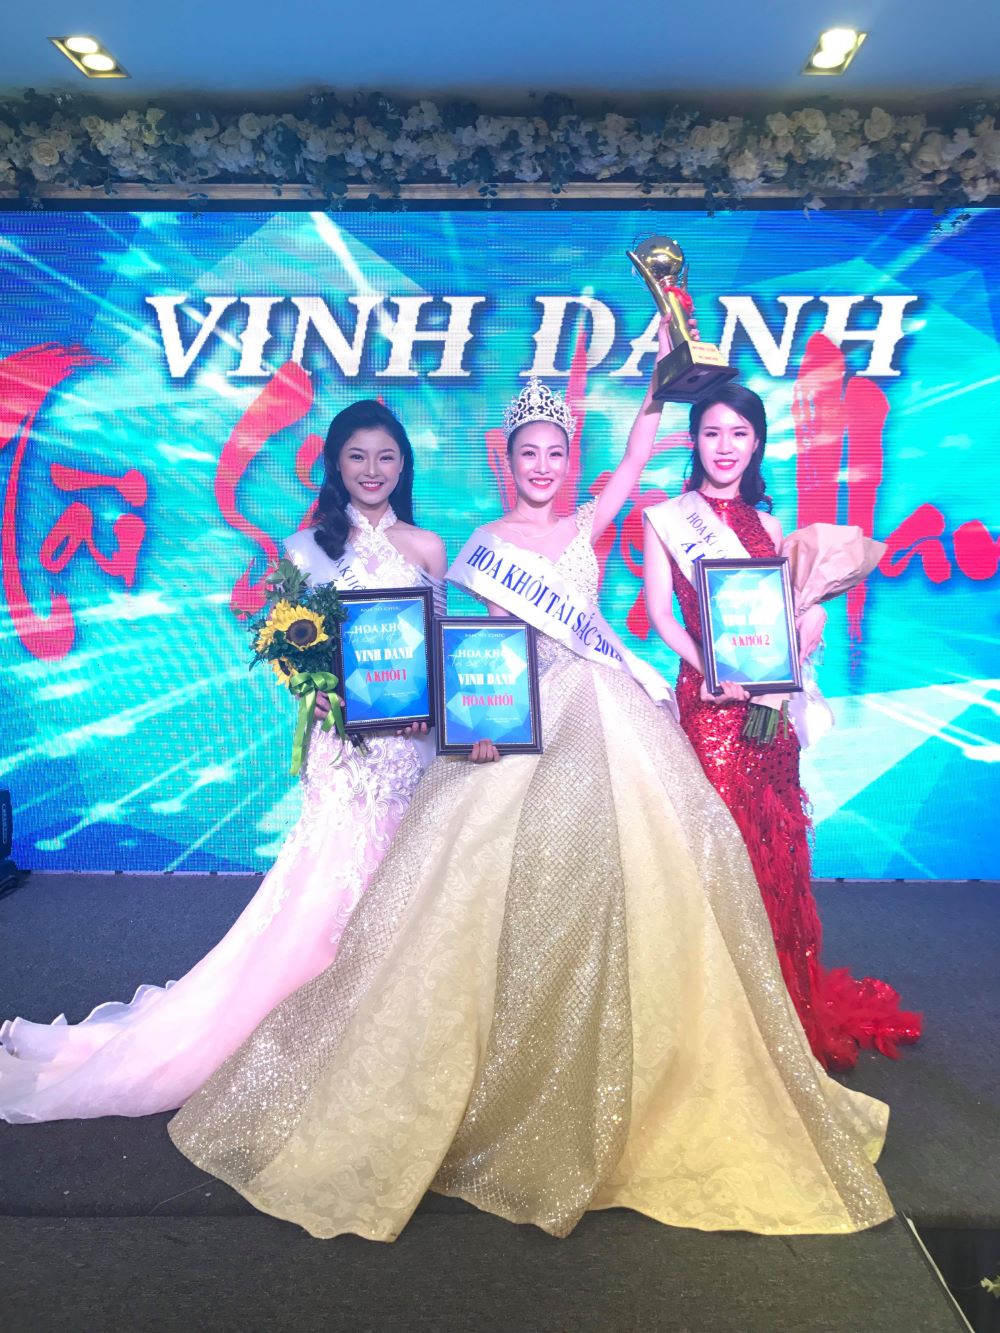 Nguyễn Thái Hà - Học viên tài năng của Vietskill đăng quang Hoa khôi Tài sắc Việt Nam 2018
